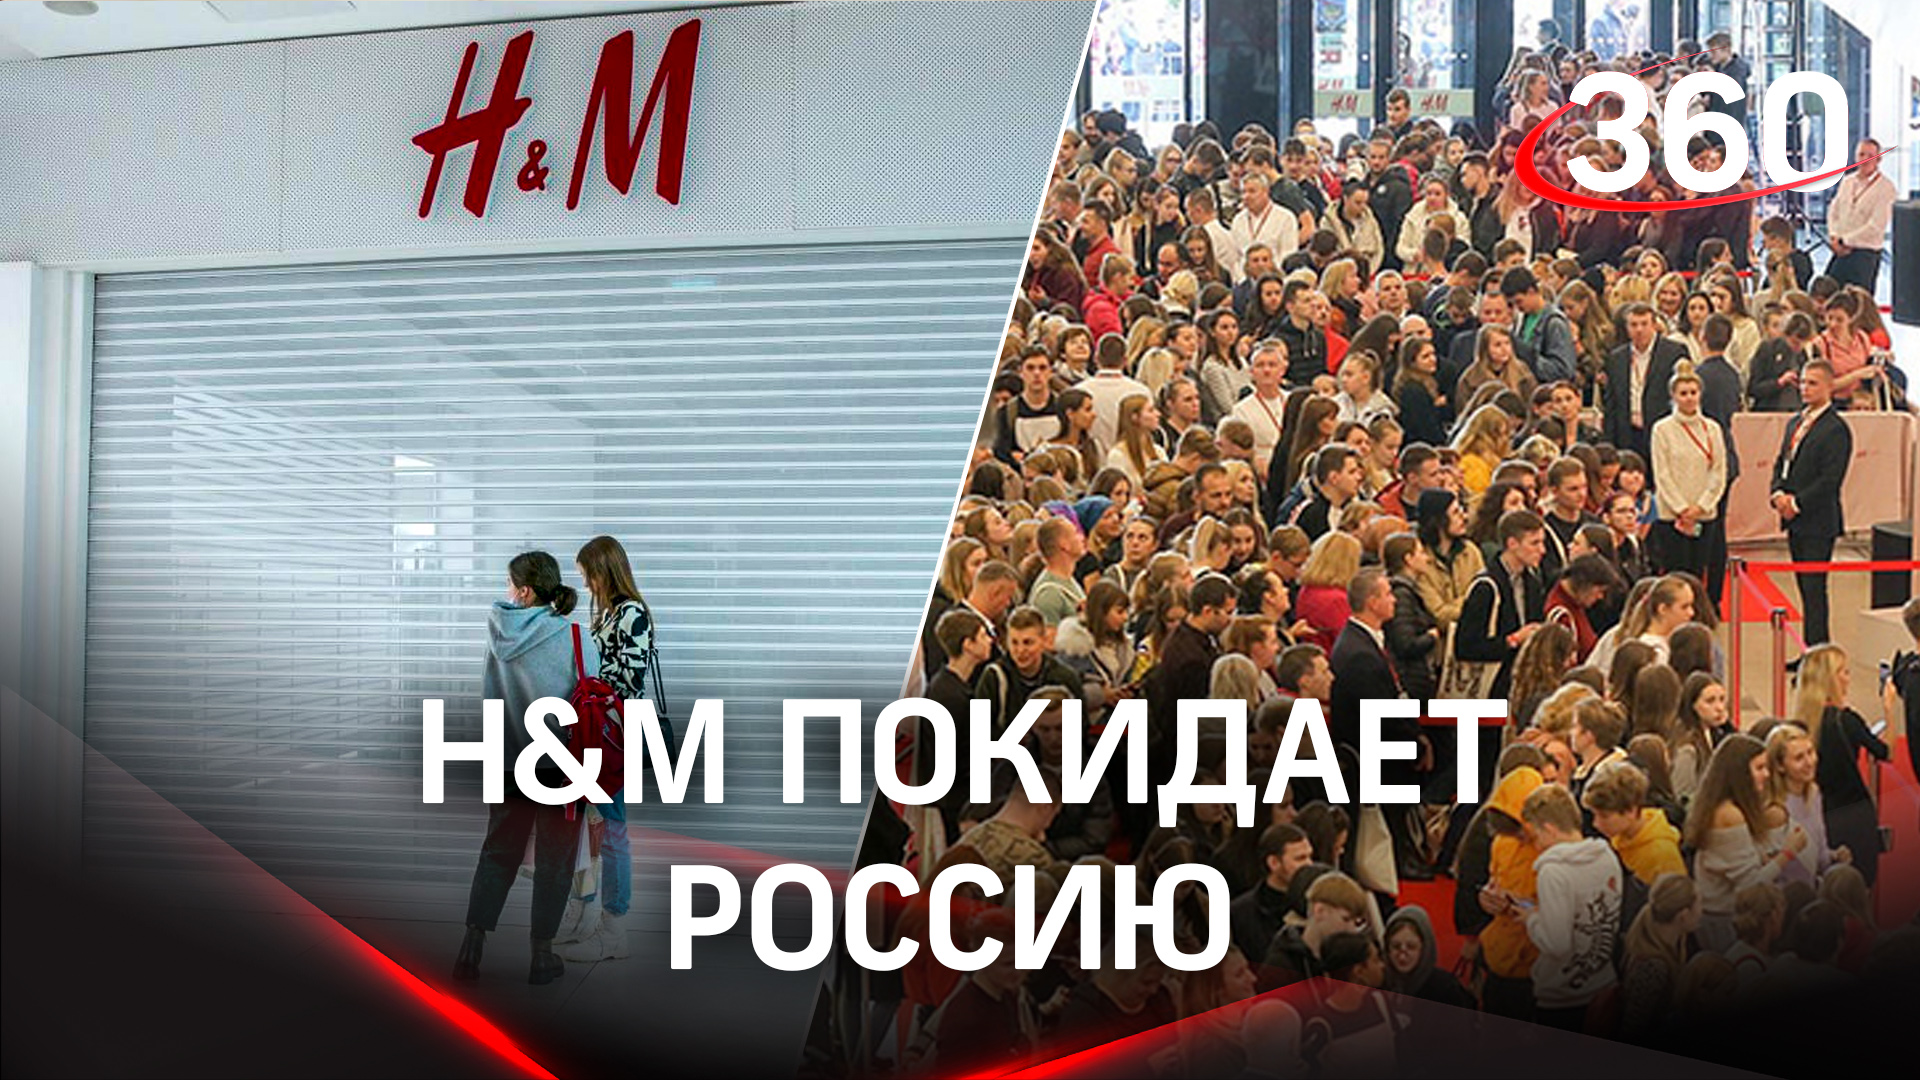 H&M покидает Россию и устраивает распродажу